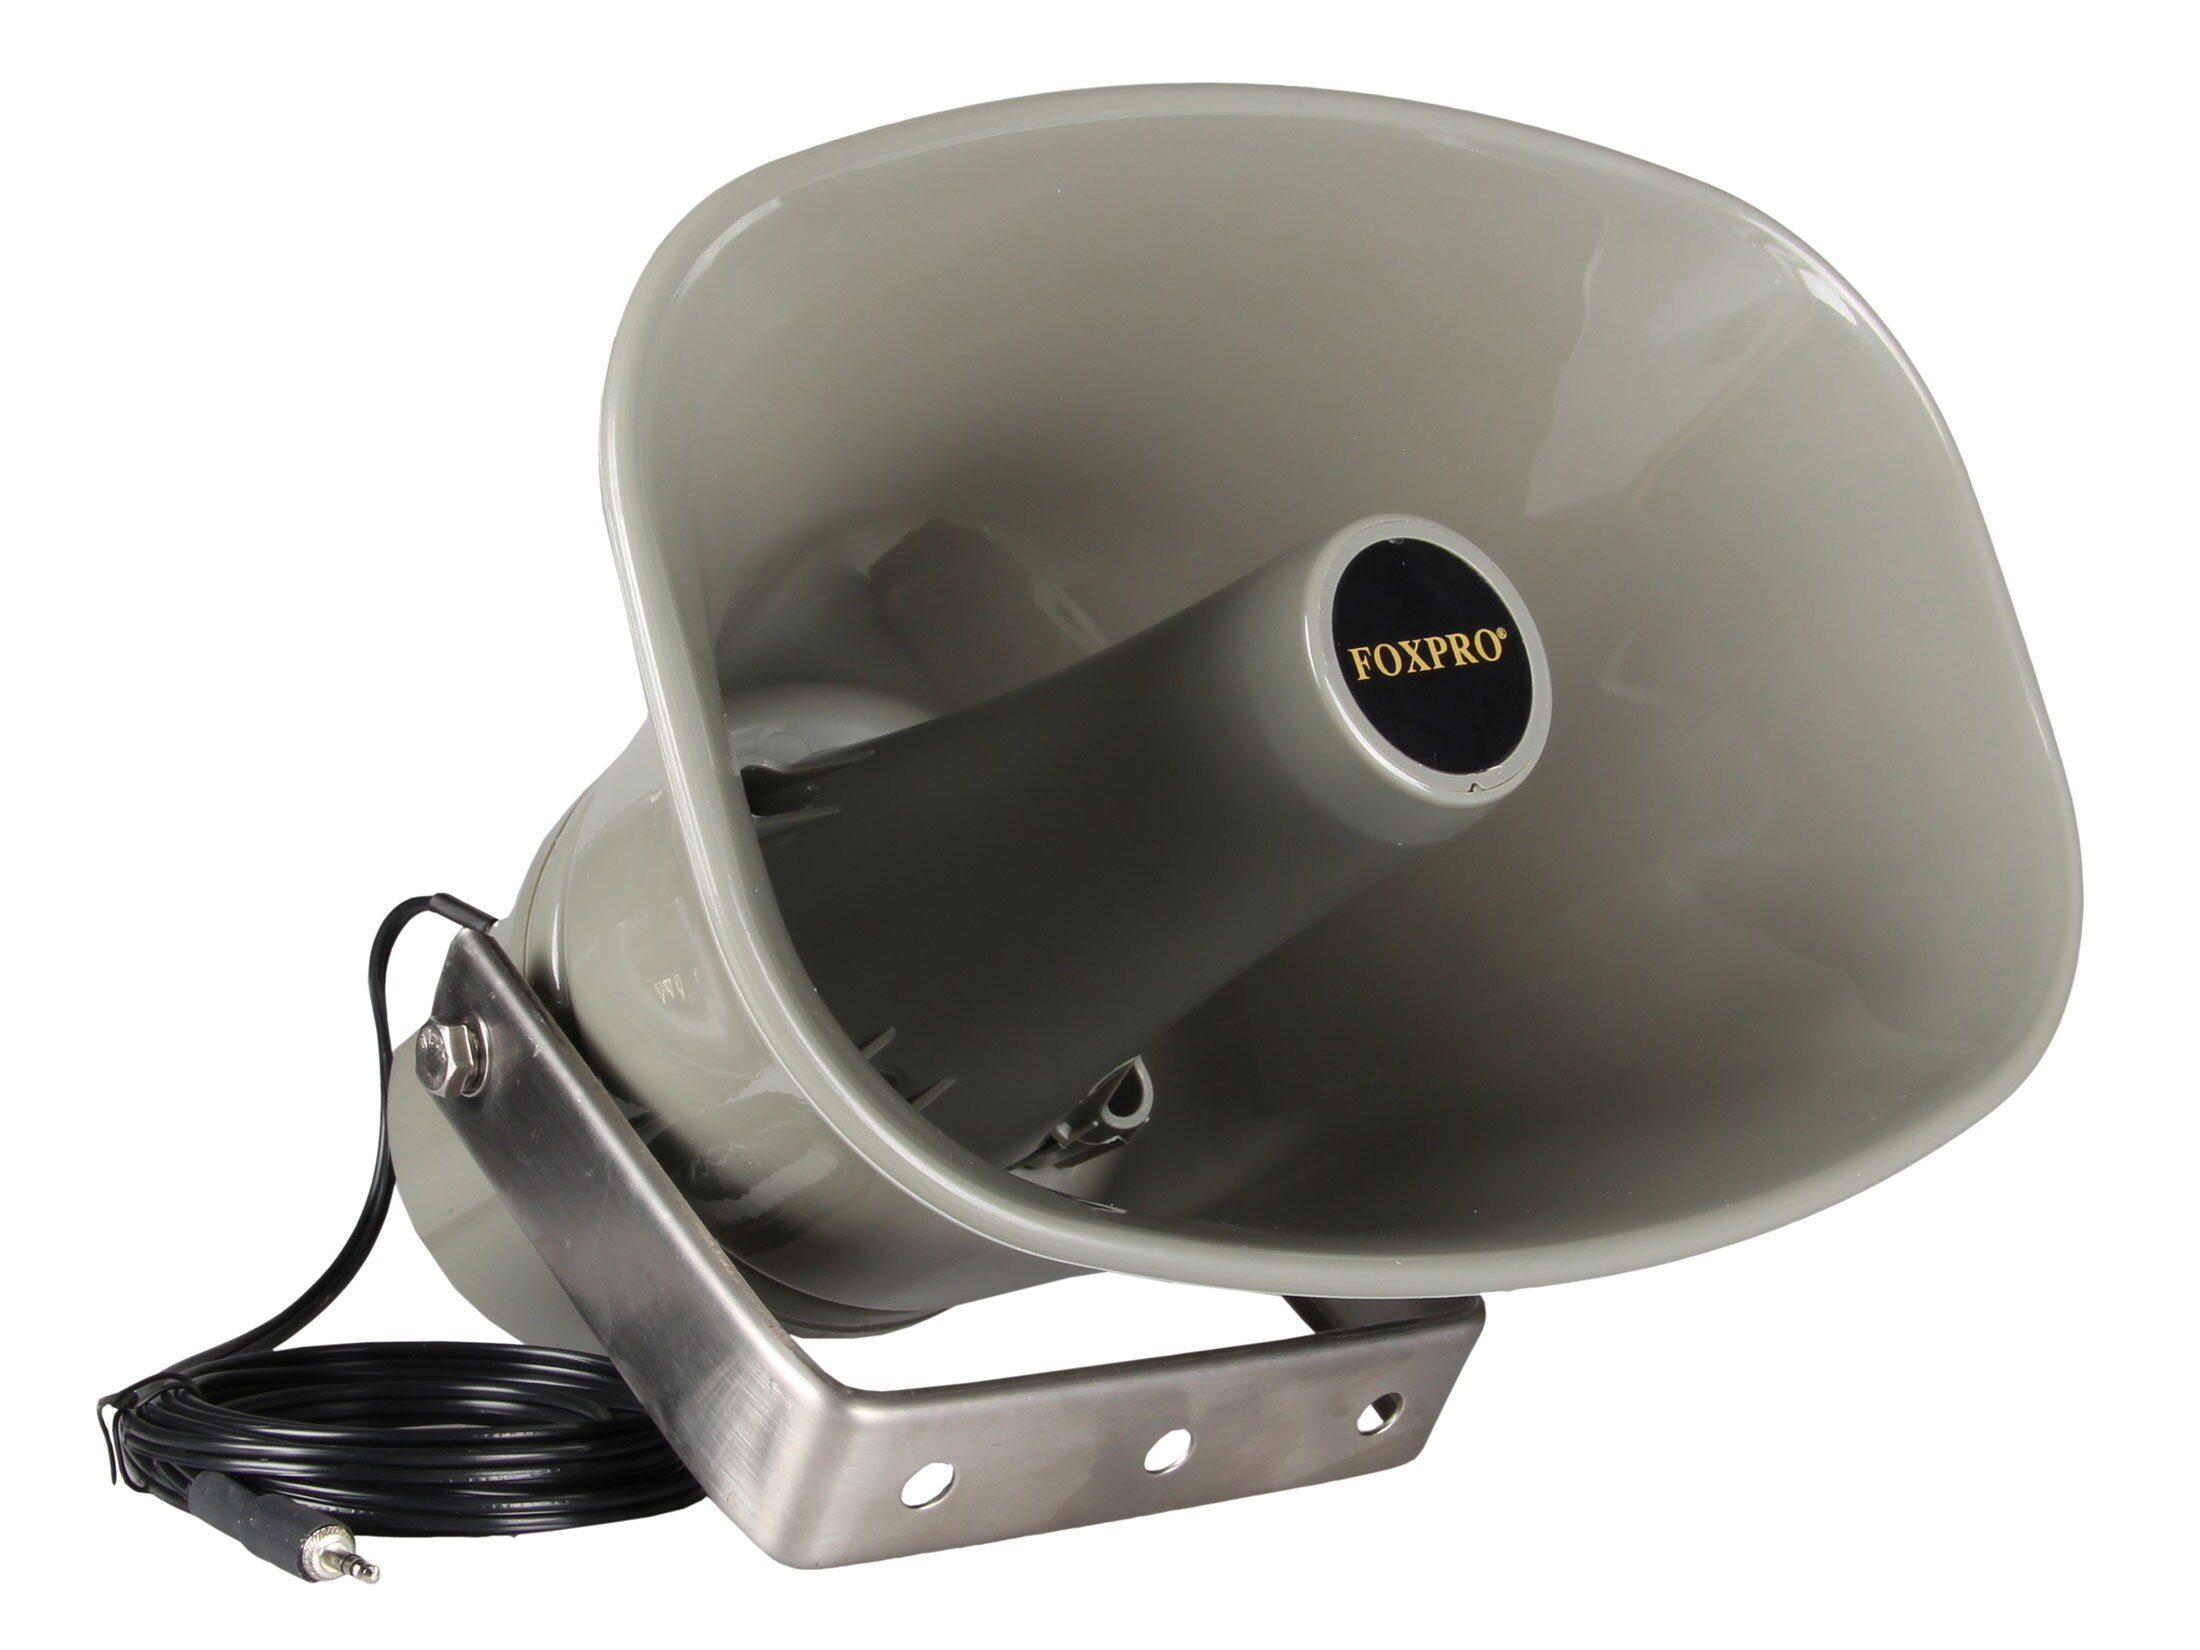 FoxPro SP70 External Speaker With 12′ Cord for 3.5mm Speaker Jack Olive Drab For Sale